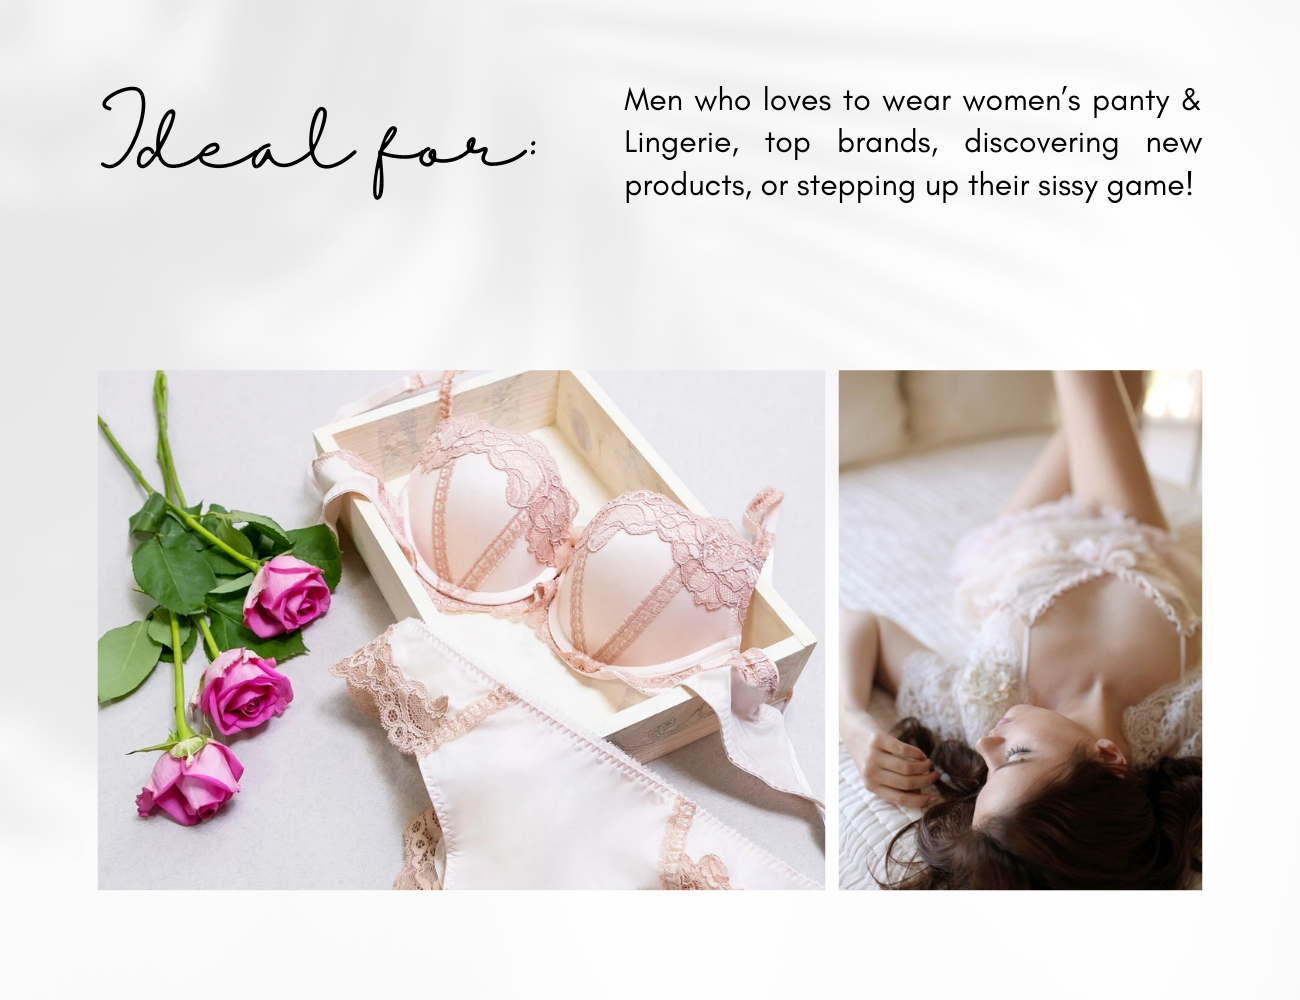 Sissification, Luxury Women’s lingerie for men box!